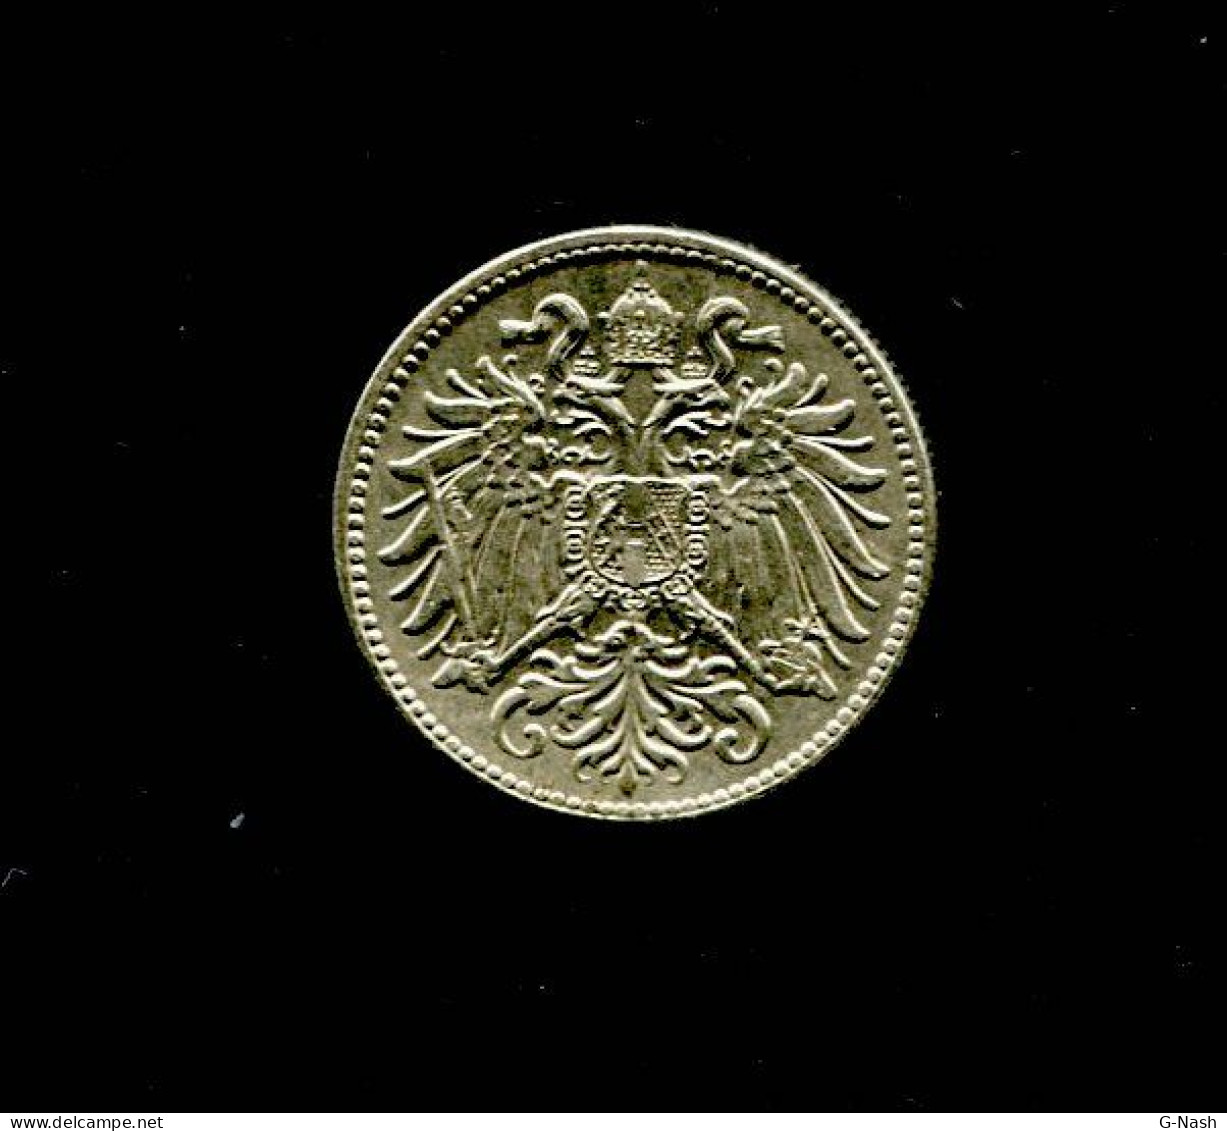 ALGERIE - Pièce De 5 Dinars De 1974 - Autriche